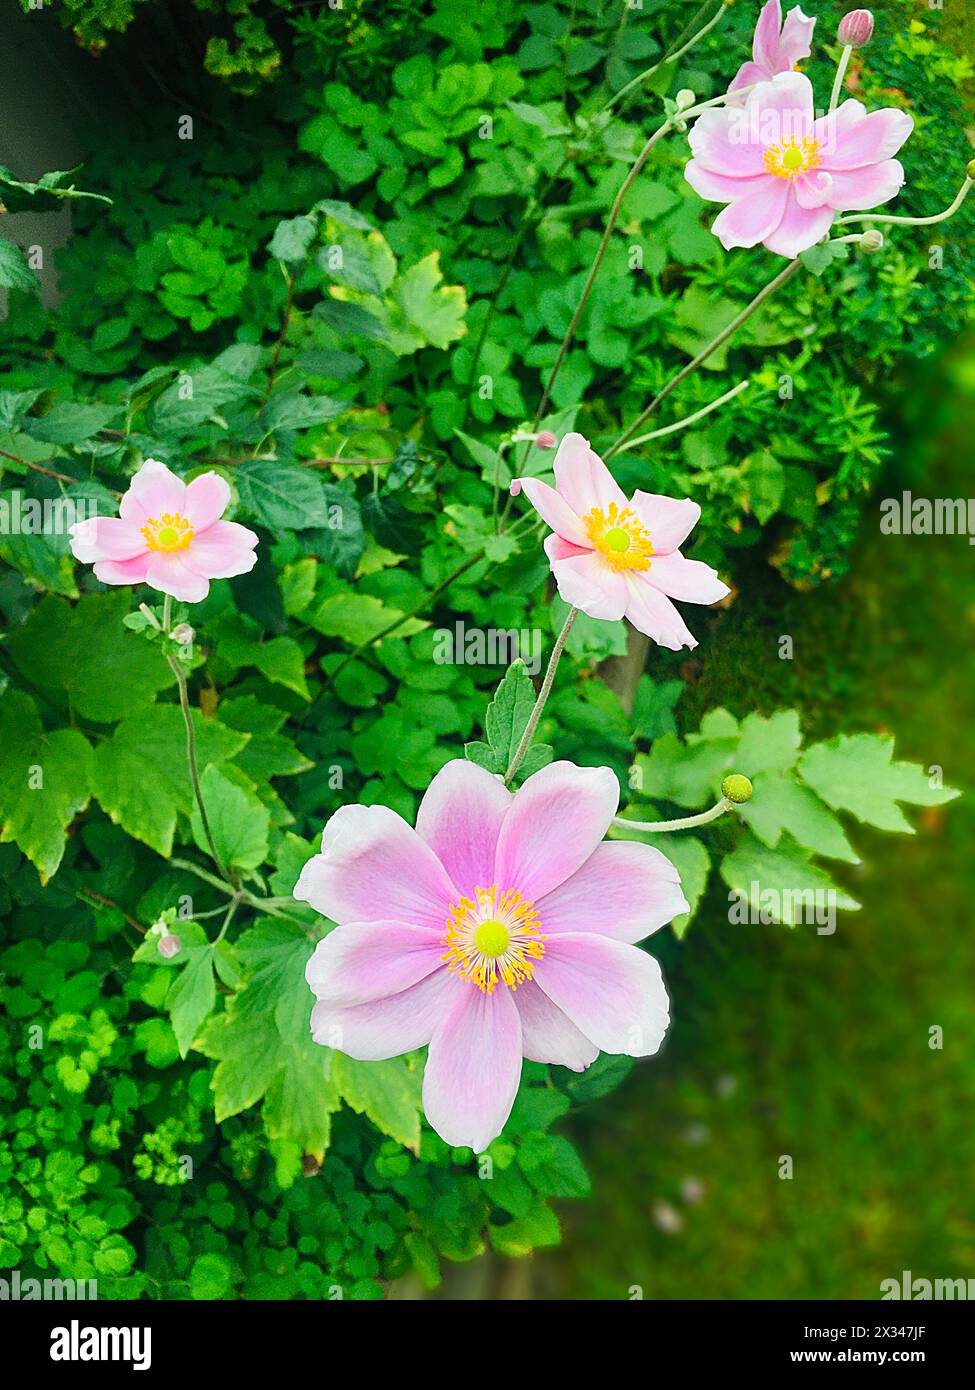 japanese tumble weed flowers Stock Photo